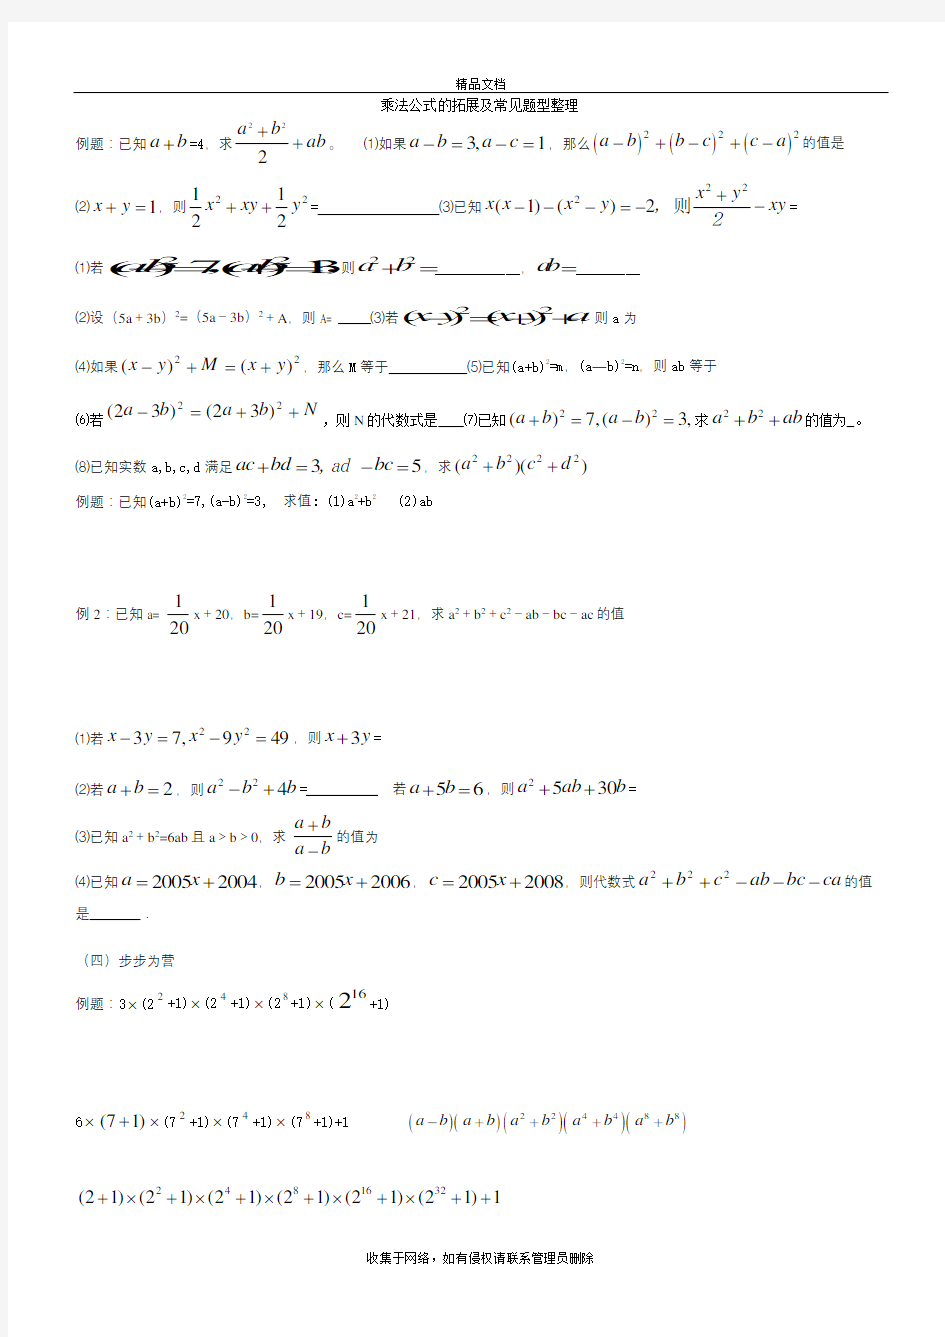 乘法公式的拓展及常见题型整理教学文稿